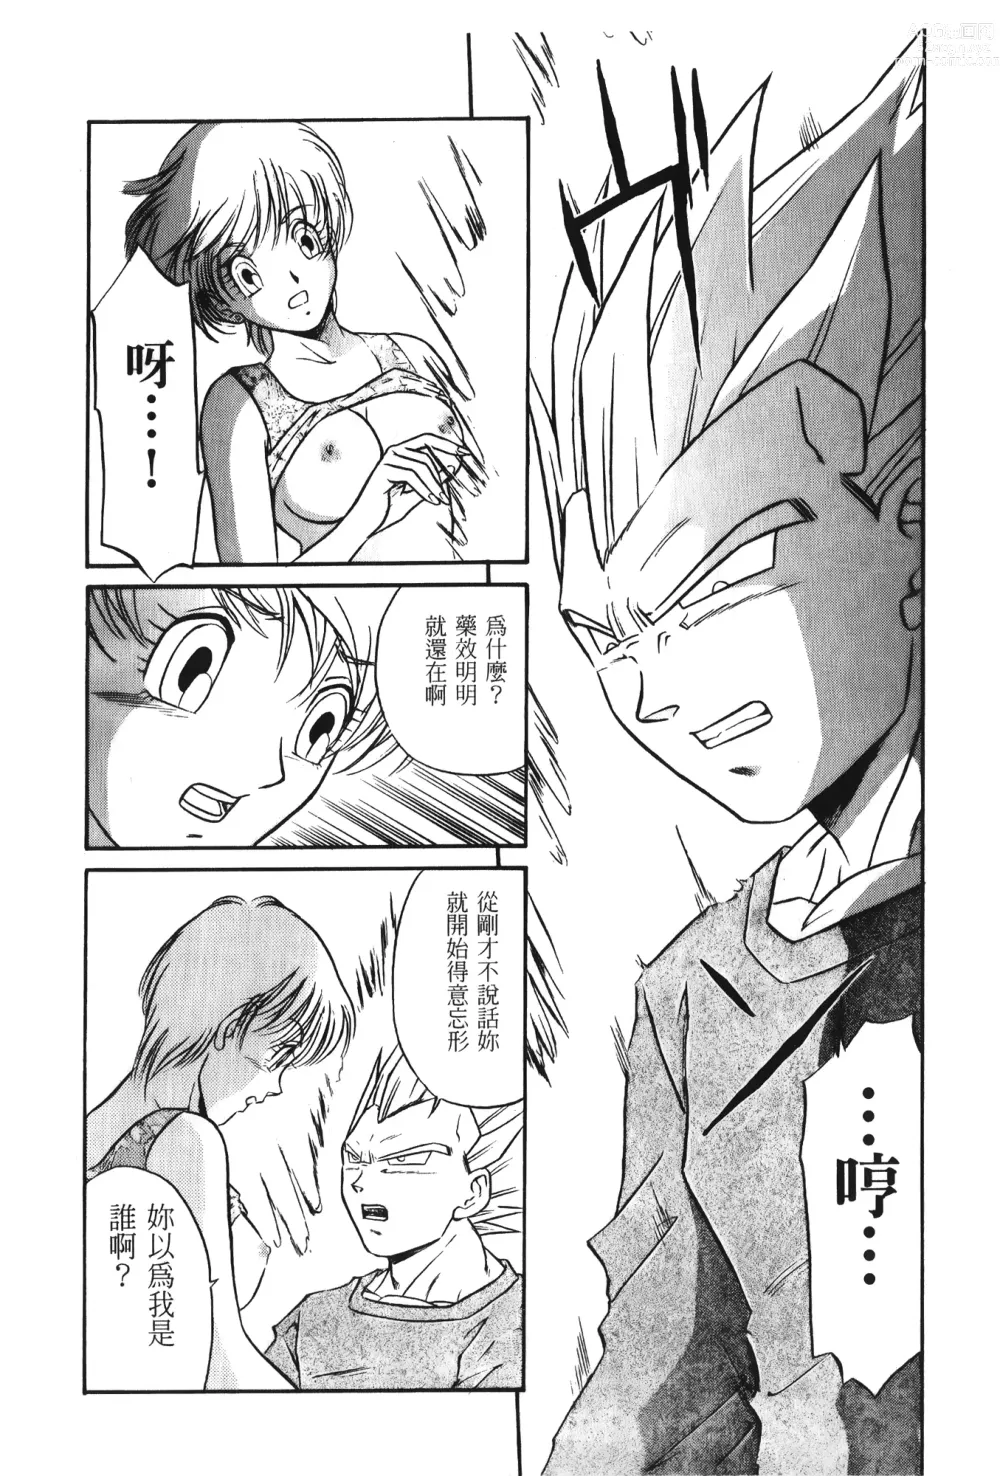 Page 28 of doujinshi ドラゴンパール 01